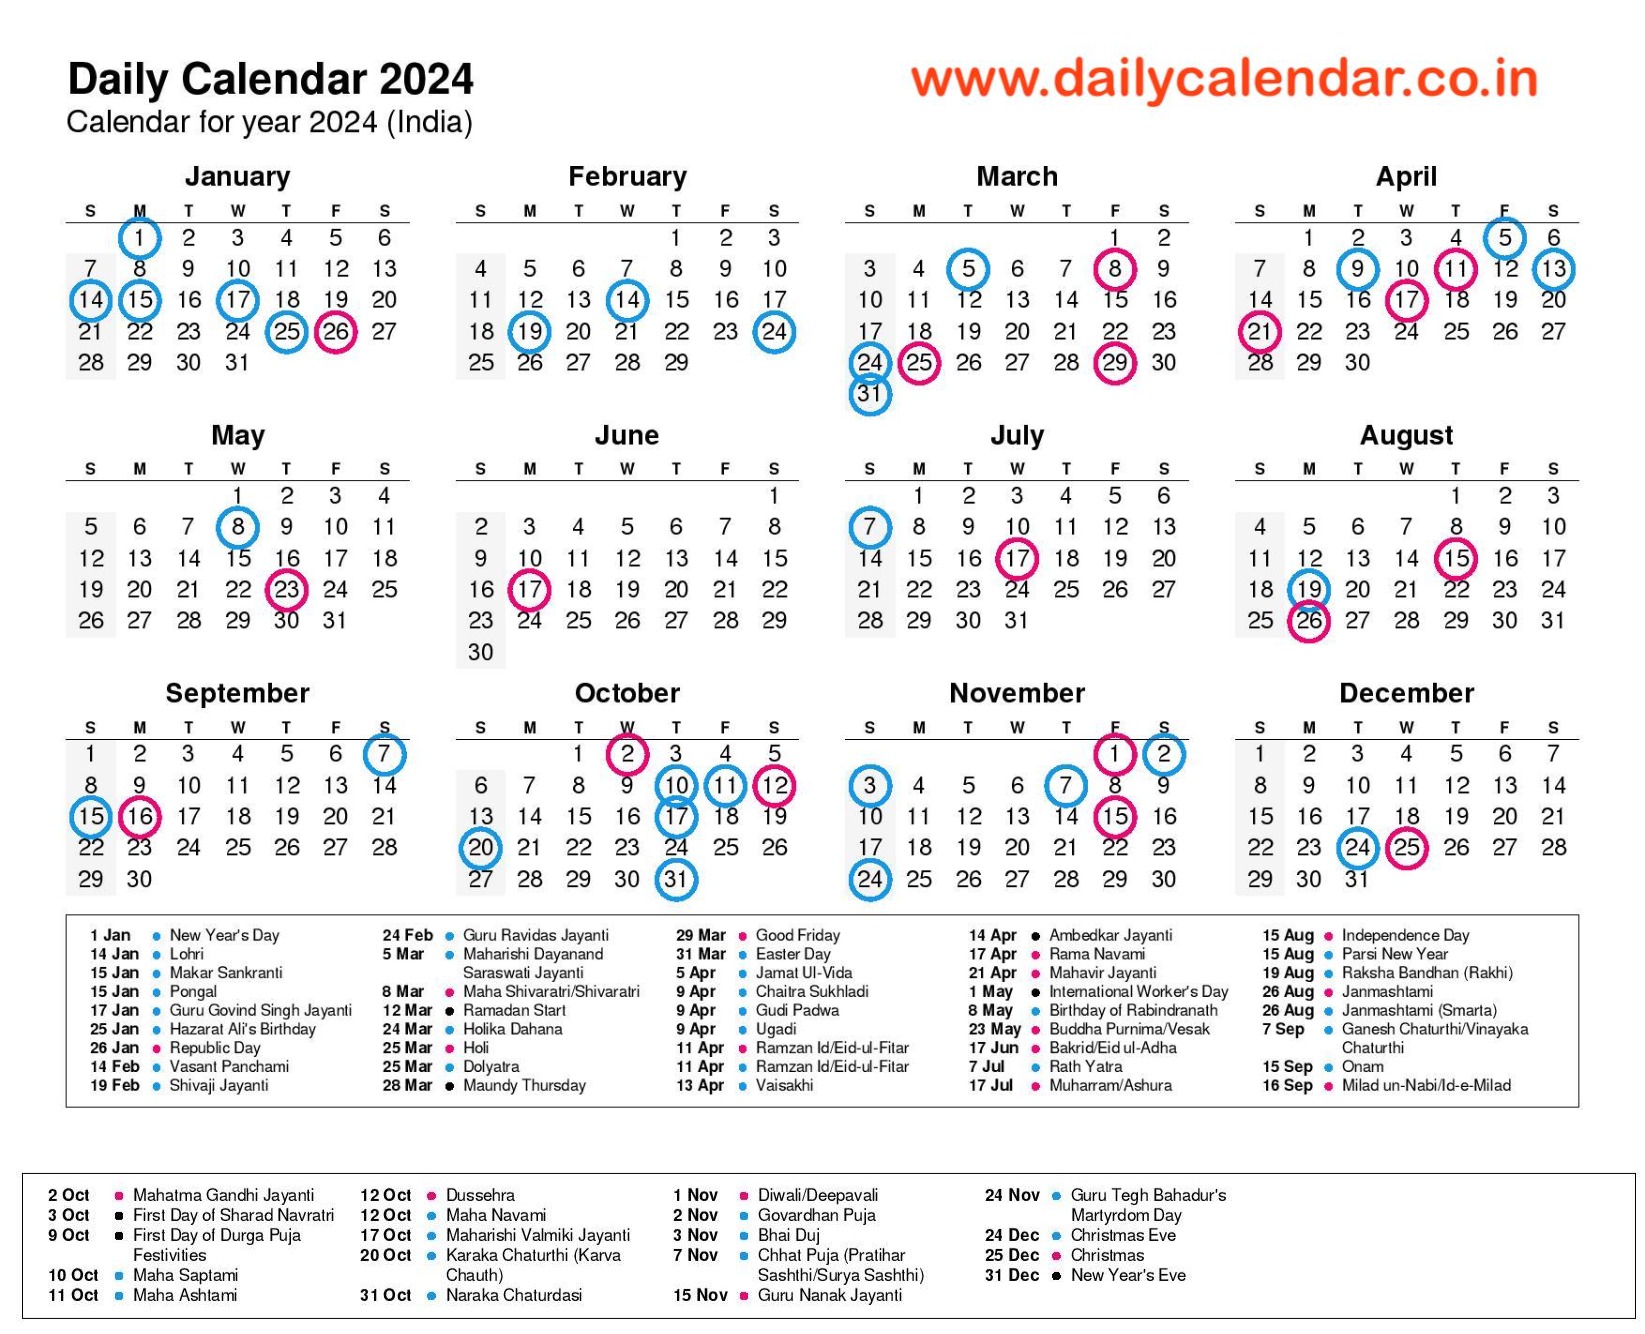 Daily Calendar 2024 with Holidays (Govt, Tamil, Telugu, Odia) Pdf